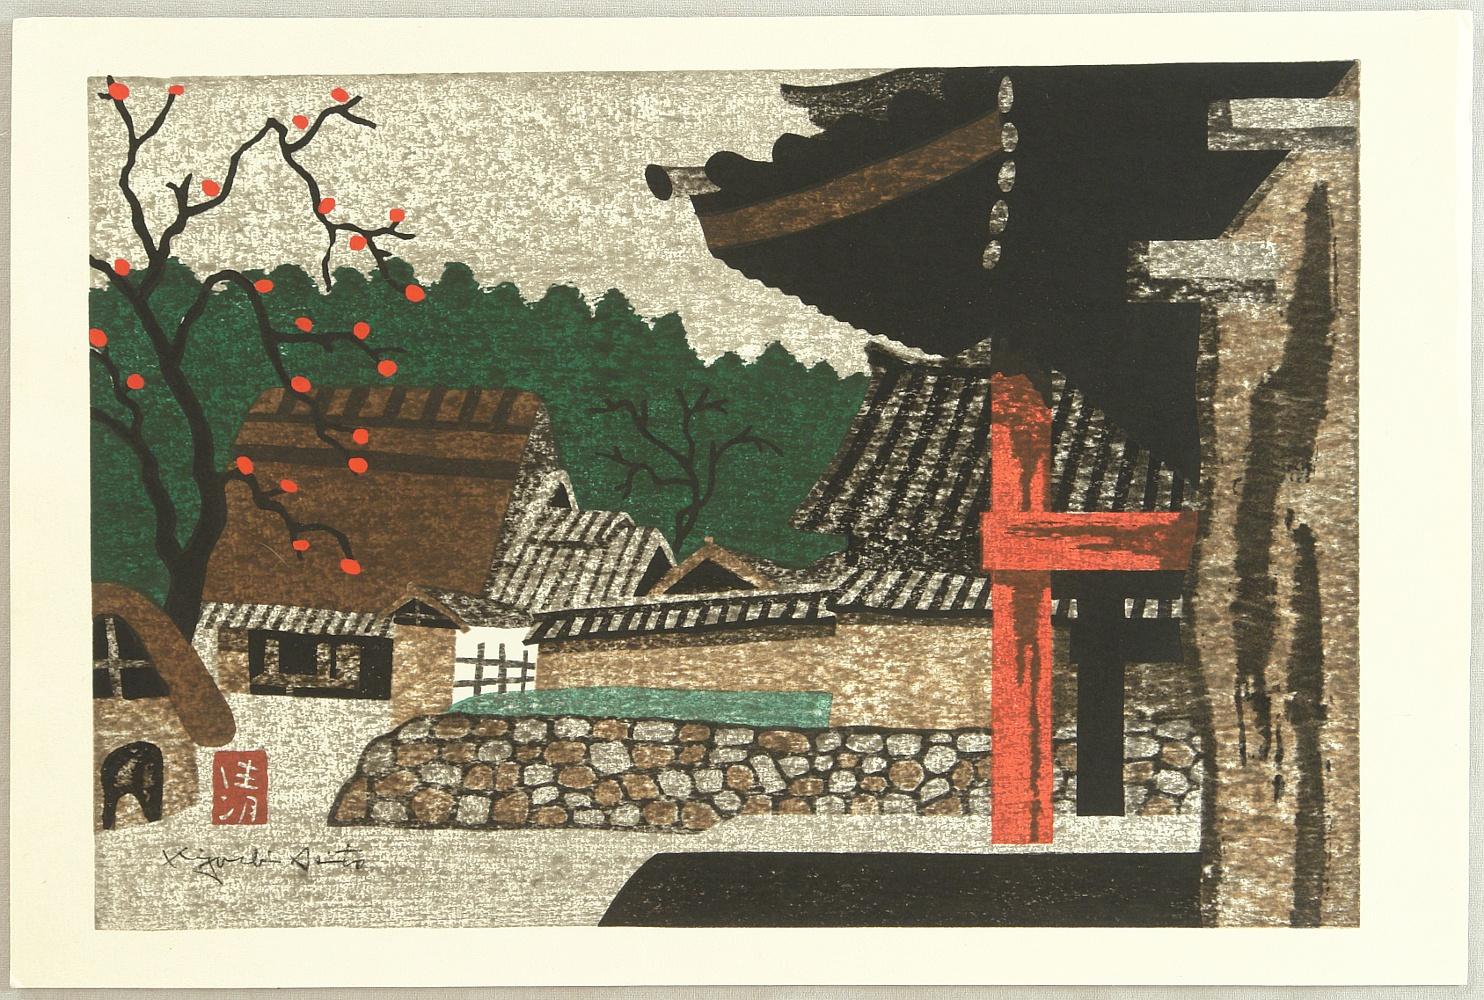 Kyoshi Saito, Villaggio con albero di caco. Dice Lowry: Saito utilizza la consistenza e colore per suggerire un dettaglio, piuttosto che riprodurlo pedissequamente. Abbiamo visto questo come un modo per rappresentare il mondo di Kubo.